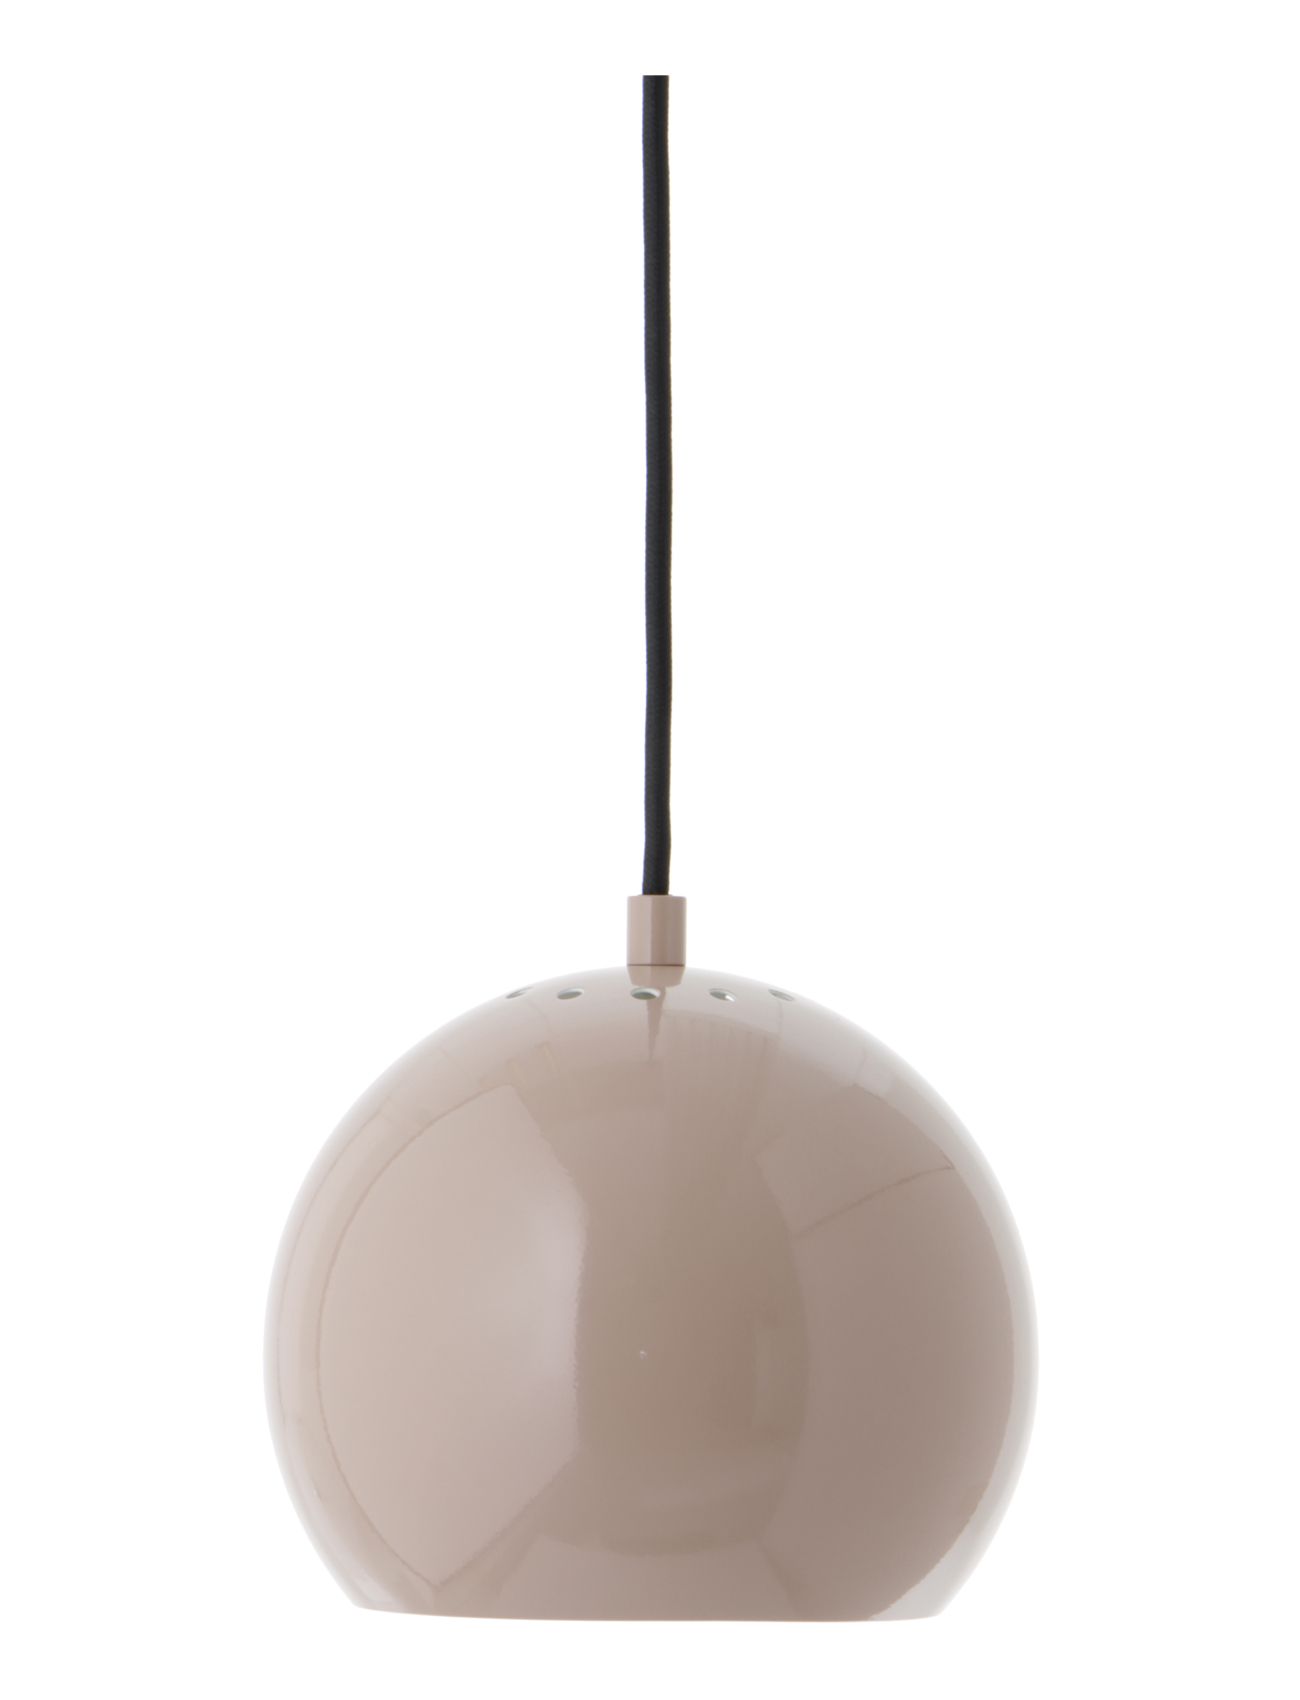 Frandsen Lighting Ball Pendant With Sleeve Home Lighting Lamps Ceiling Lamps Pendant Lamps Beige Frandsen Lighting